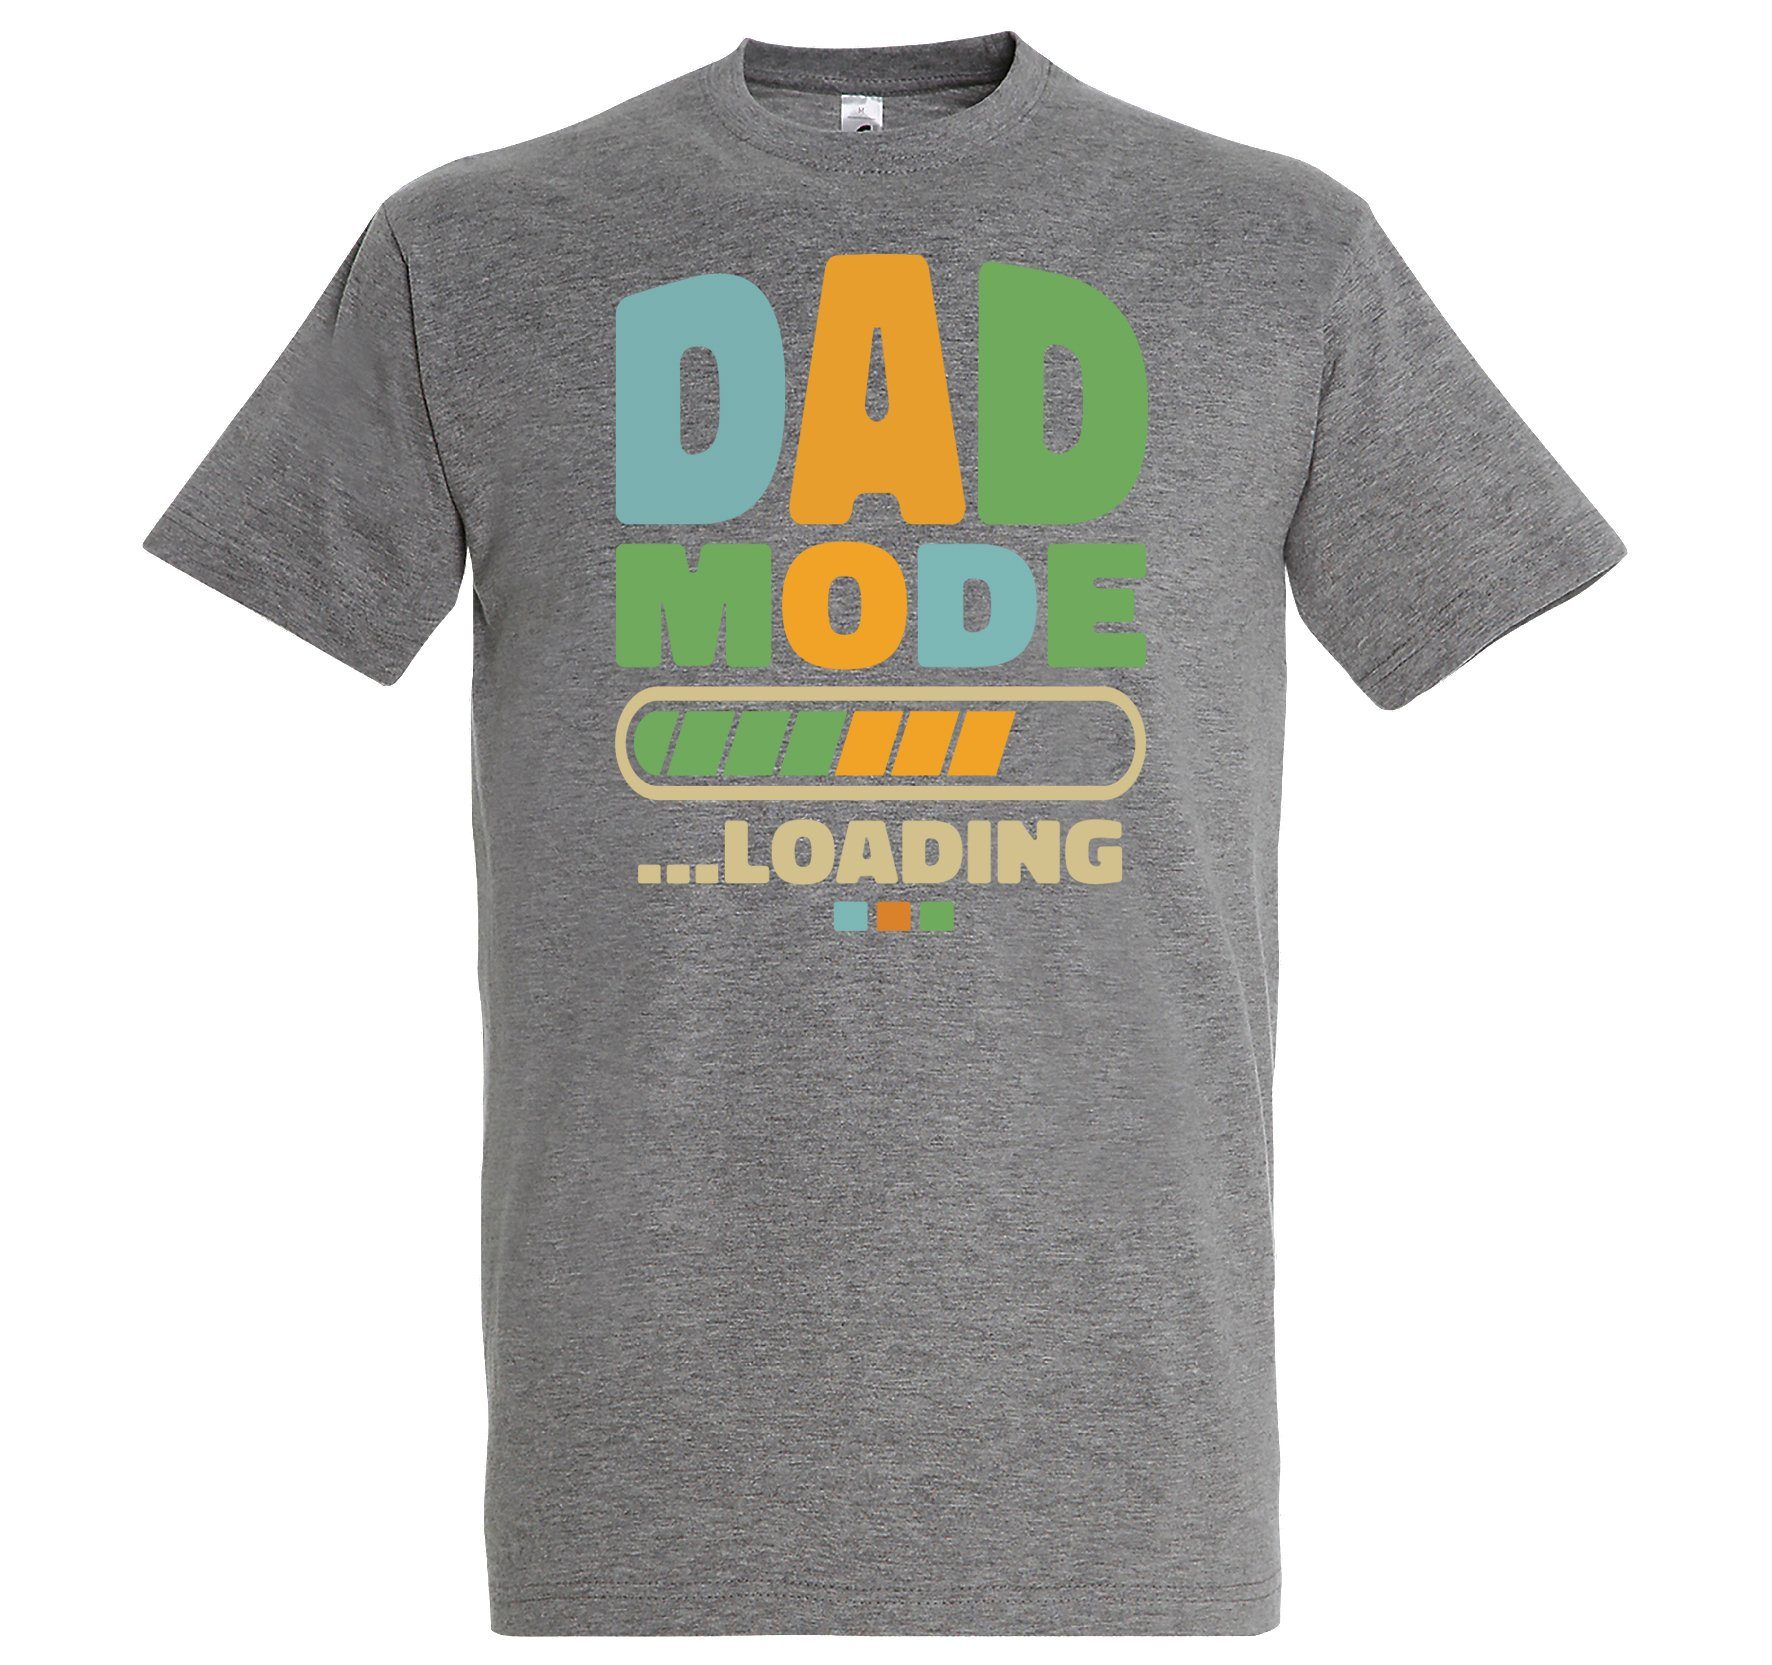 DAD Herren T-Shirt im Loading Designz Mode Fun-Look Youth Grau Shirt